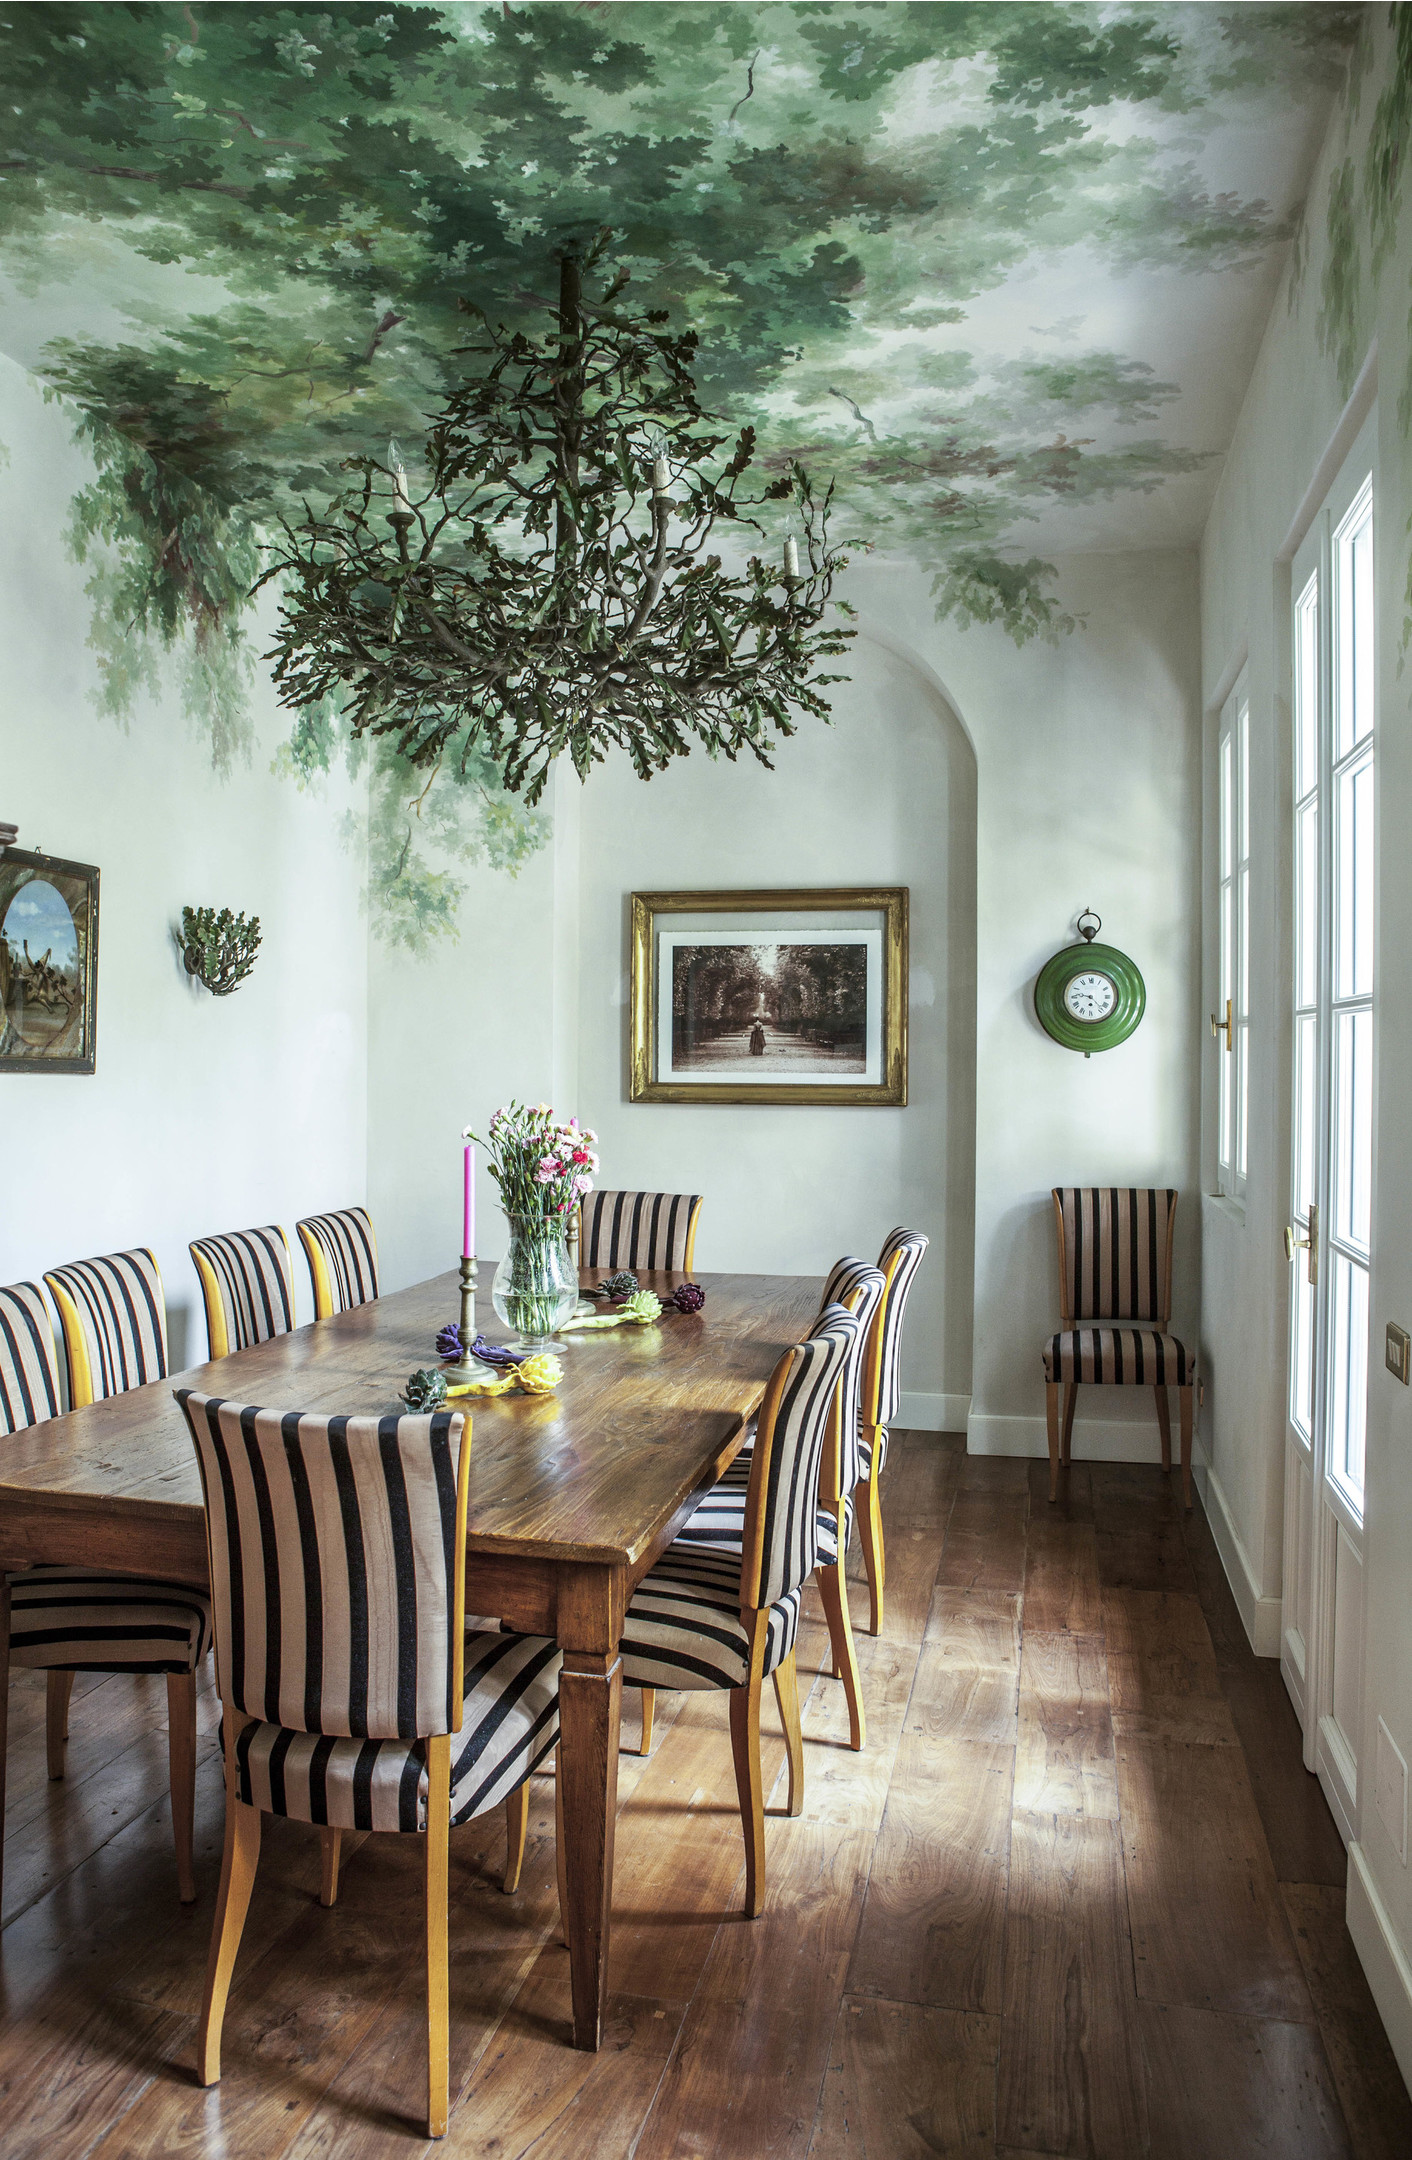 Căn hộ của NTK Martha Ferry cũng sử dụng nghệ thuật bích họa để trang trí cho khu vực trần và tường phòng ăn. Một cảm giác cực kỳ sinh động khi hình ảnh cây cối xanh tươi được vẽ nên như hòa vào chiếc đèn trần thành một chỉnh thể thống nhất!